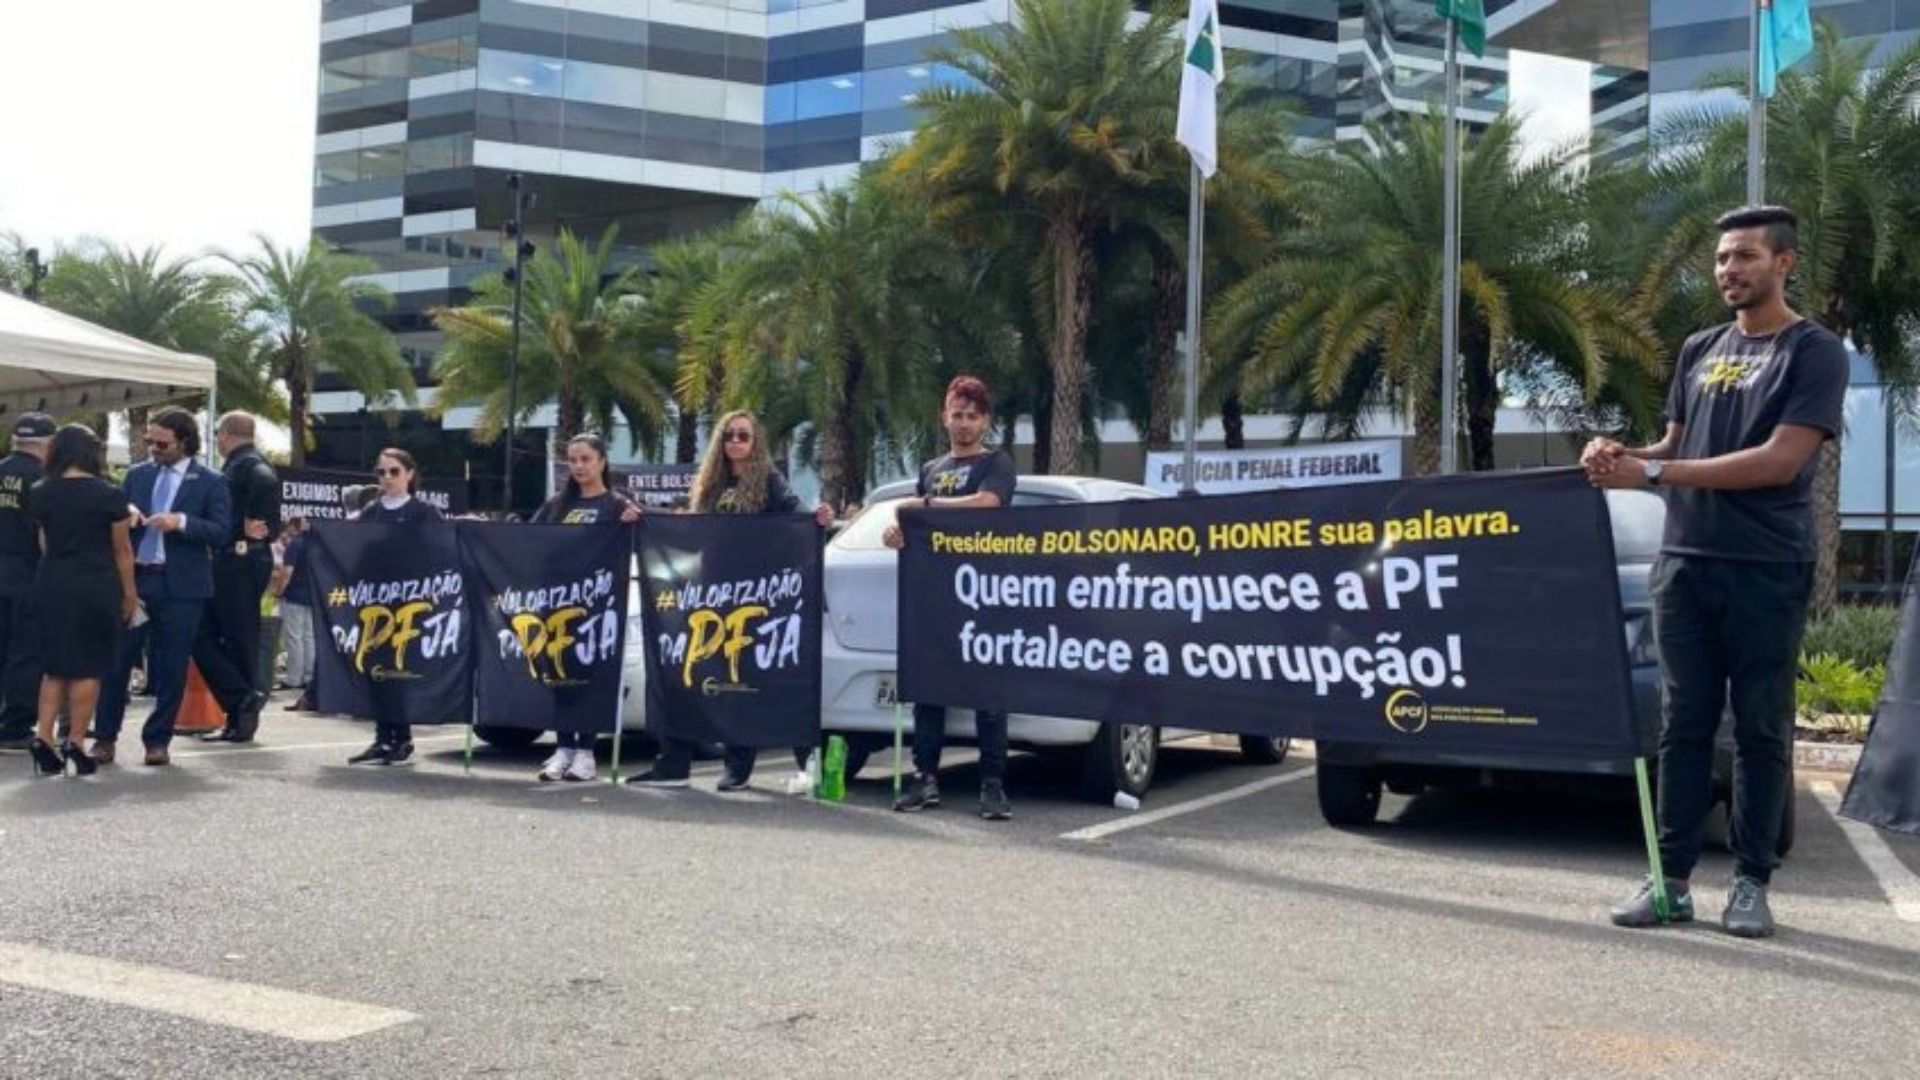 Foto de funcionários da PF com faixas e cartazes contra a decisão do presidente Bolsonaro.